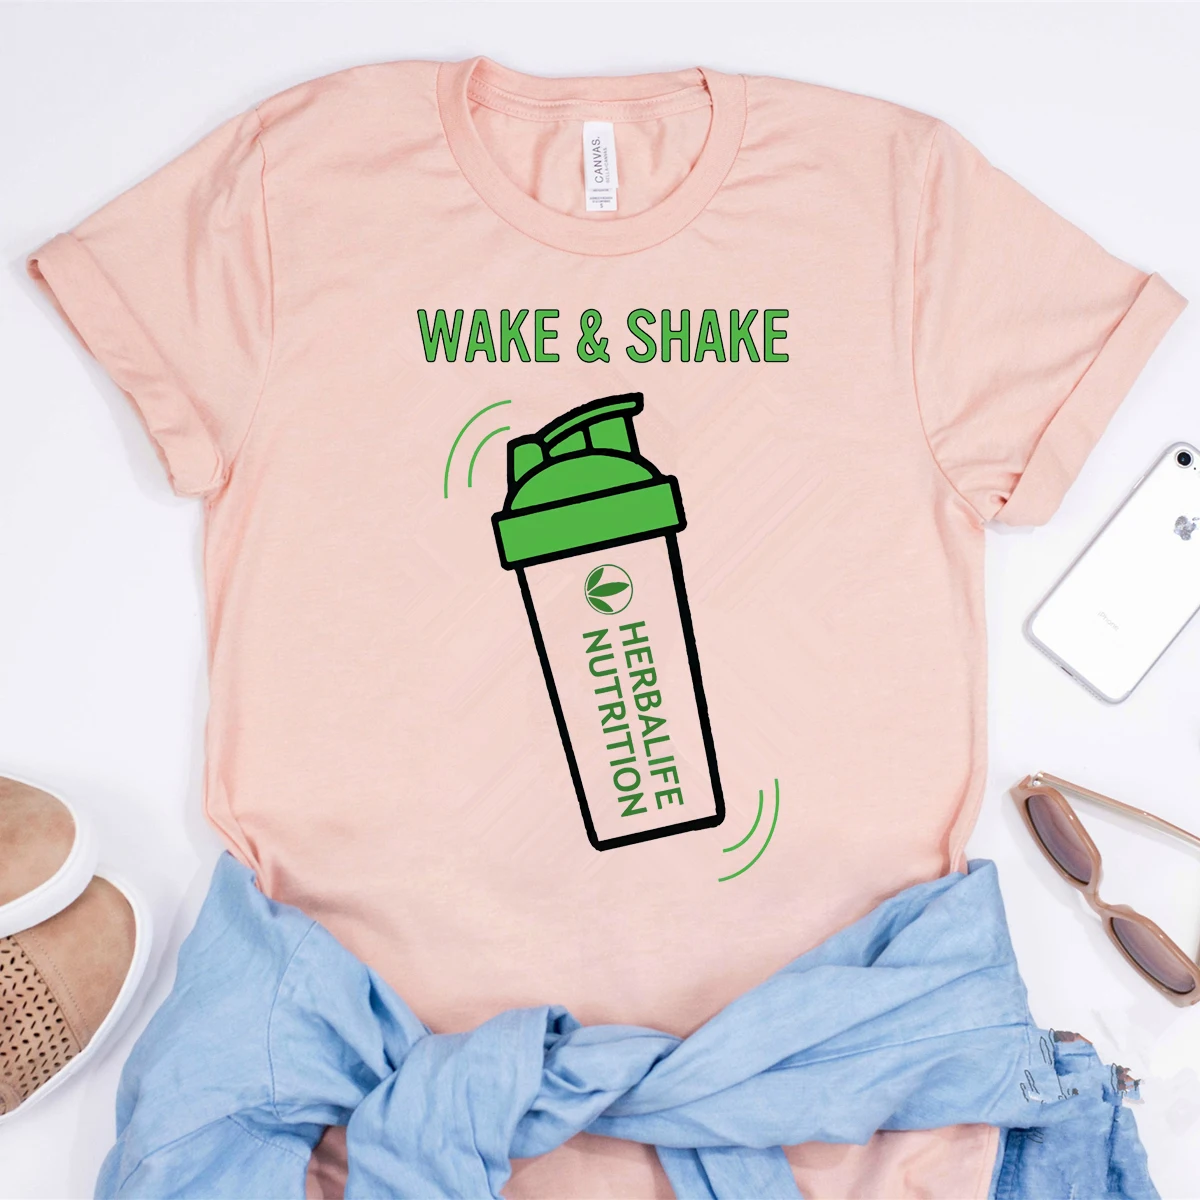 Wake & Shake de Nutrición de Herbalife Camisa Divertida de Herbalife T-shirt de las Mujeres Casual Tops Entrenamiento Camisetas, Además de Tamaño de Harajuku Camisa 3